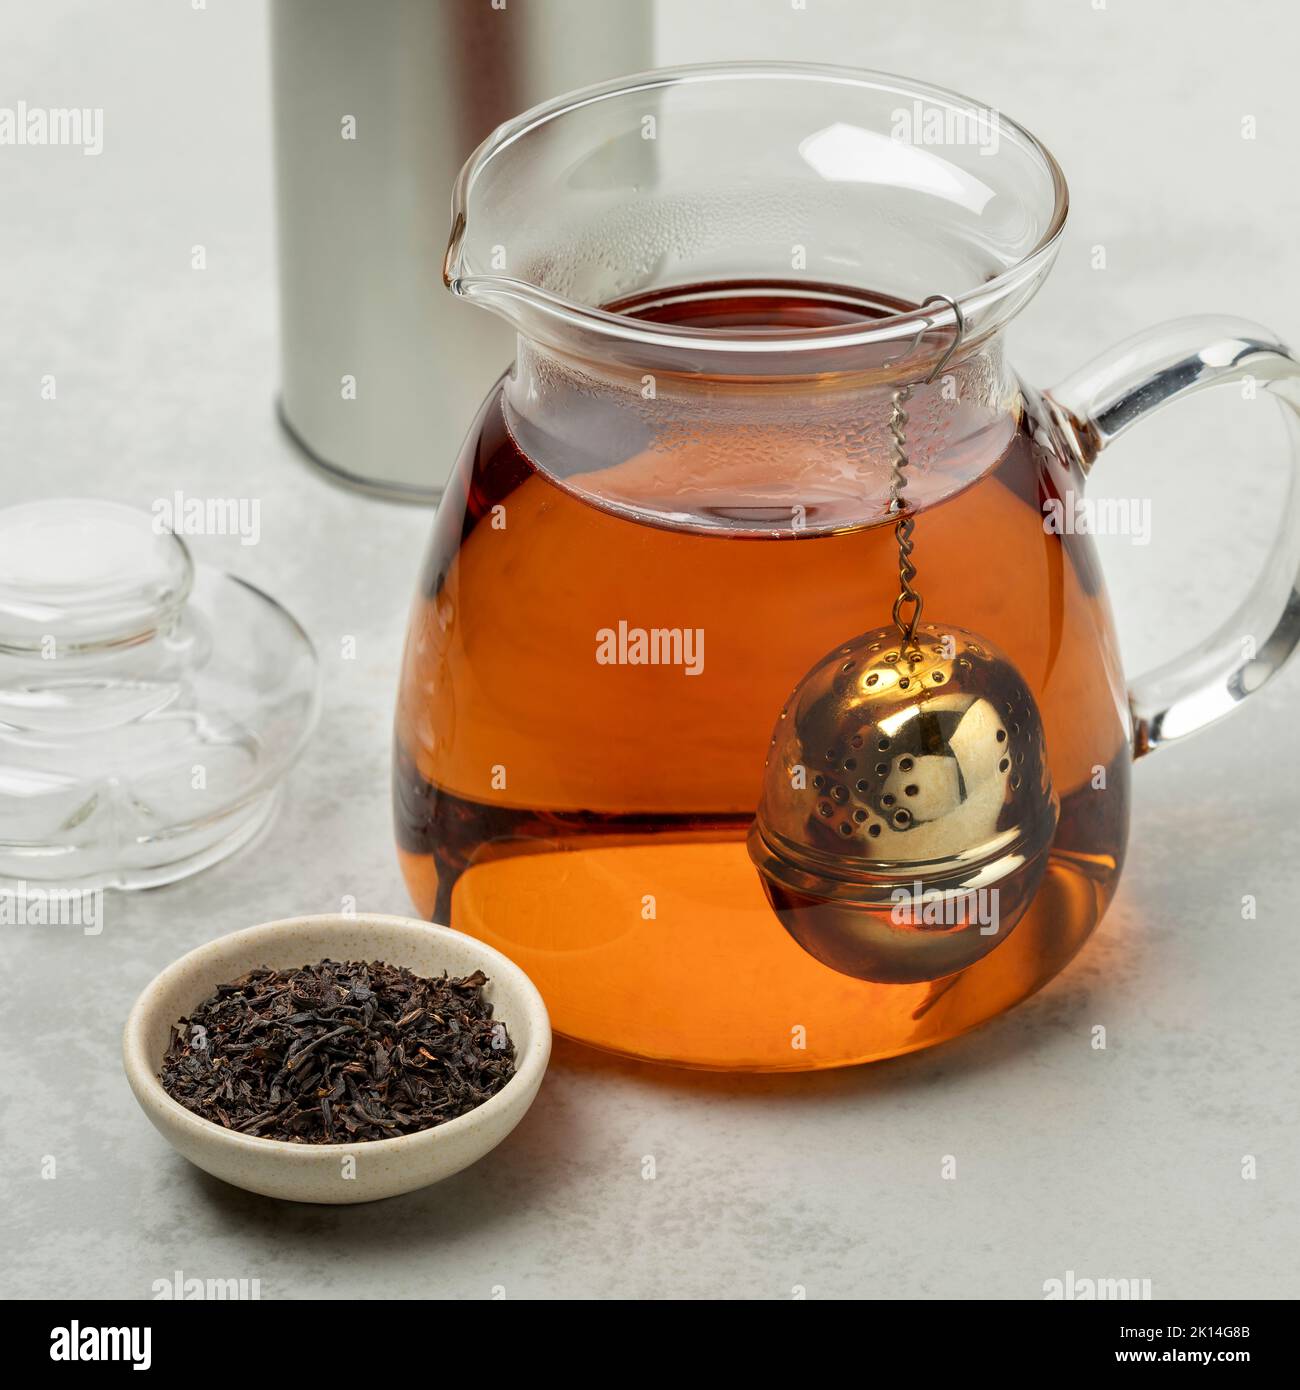 Théière en verre avec infuseur de thé en métal et bol avec thé allemand Ostfriesen devant Banque D'Images